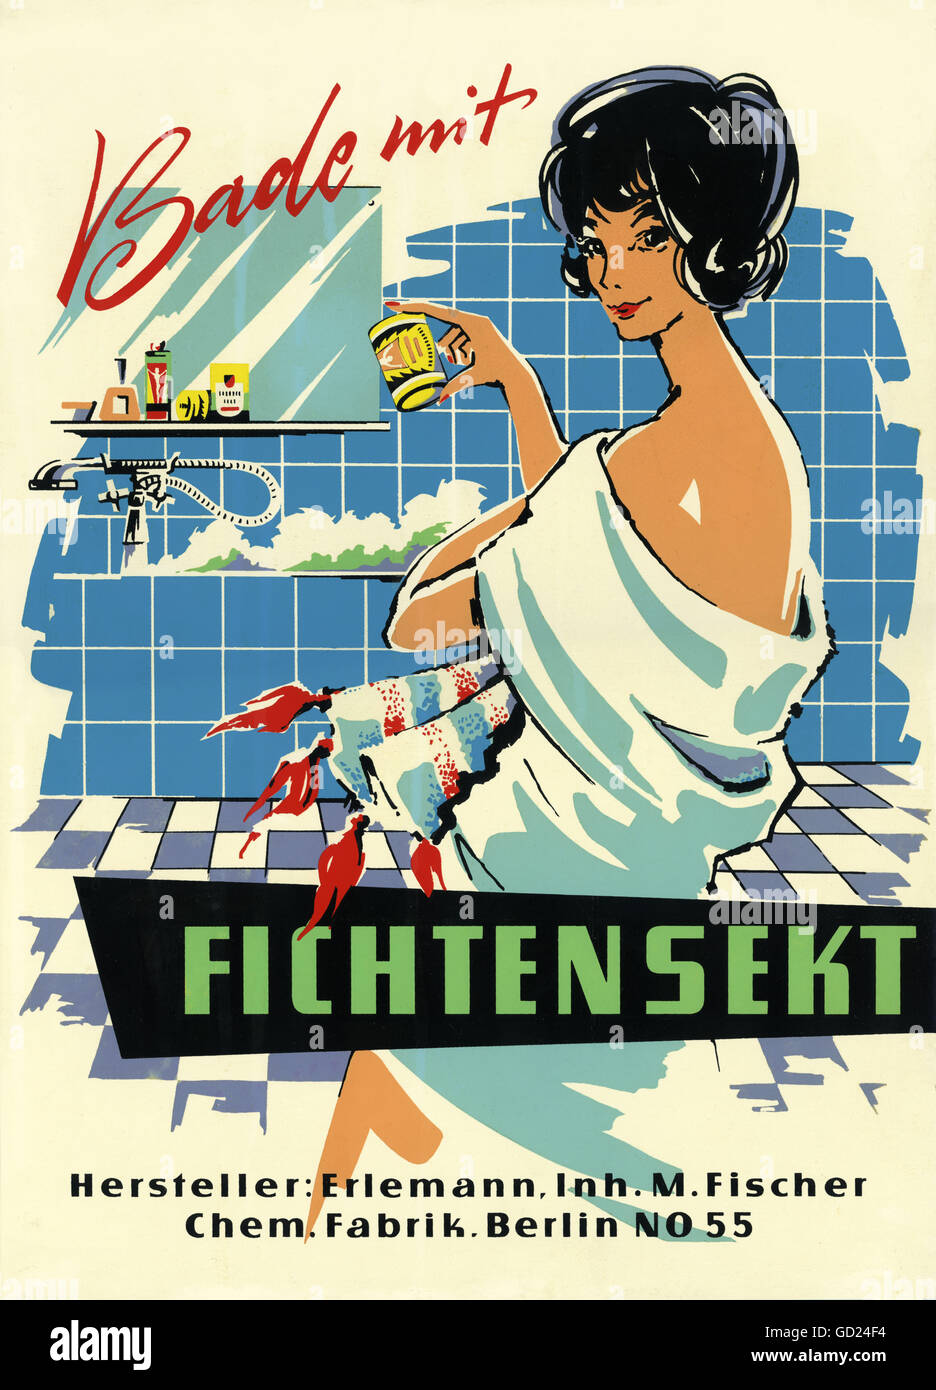 Publicité, cosmétiques, panneau publicitaire pour sels de bain, 'Bade mit Fichtensekt', marque: Fichtensekt, fabriqué par: Erlemann, usine chimique, Berlin, Allemagne de l'est, vers 1955, droits additionnels-Clearences-non disponible Banque D'Images